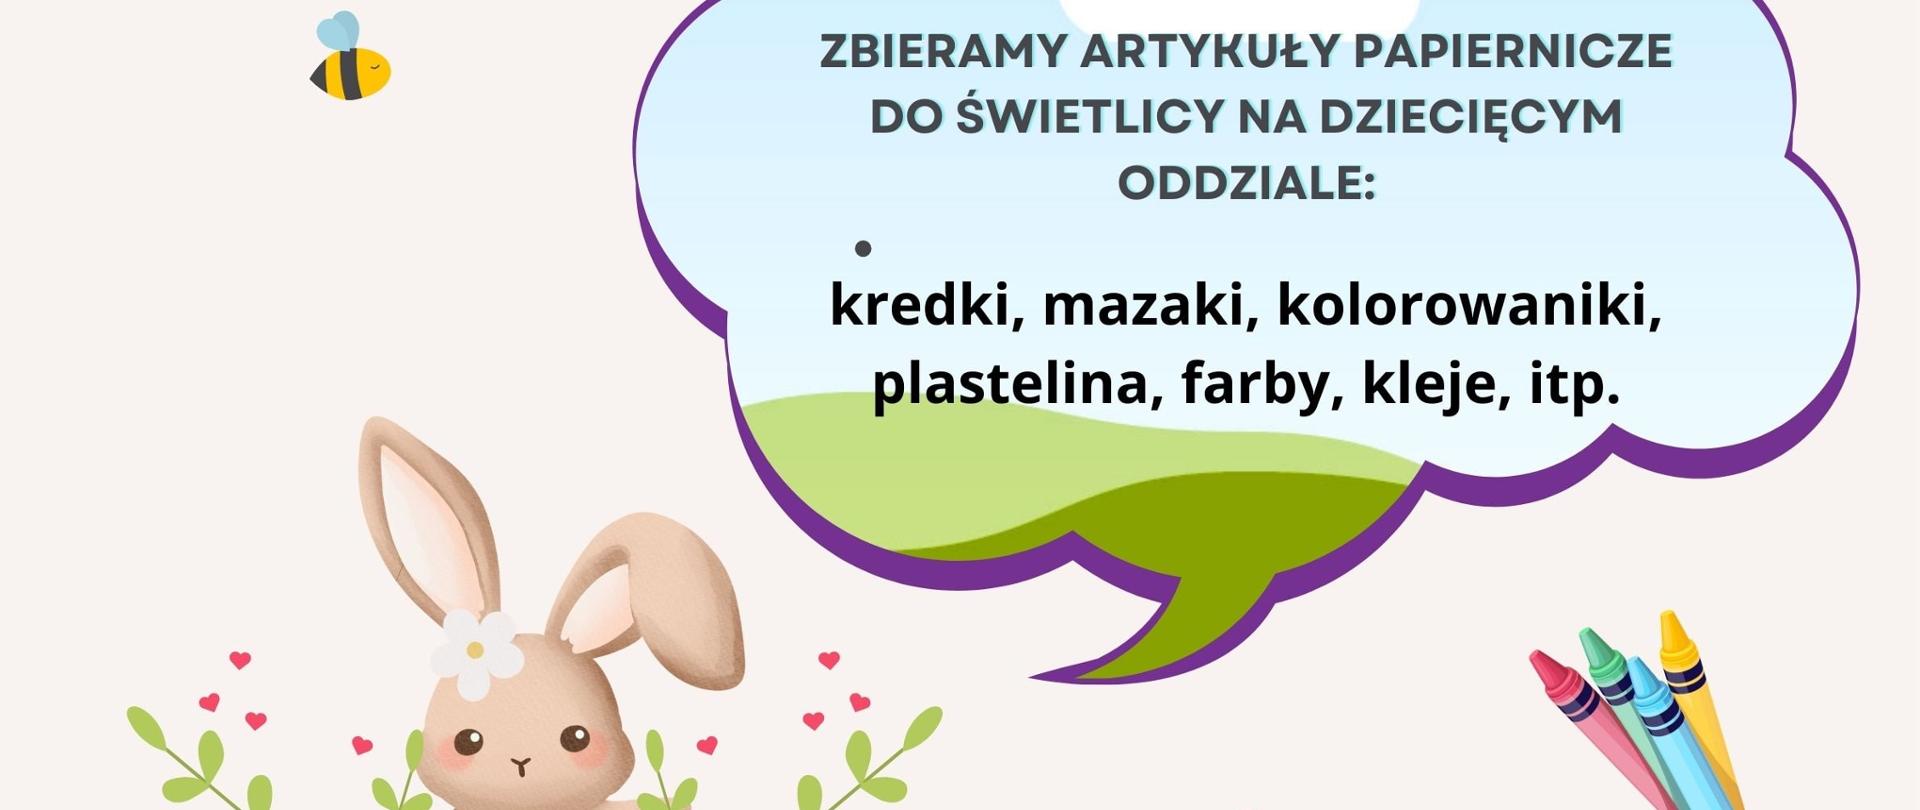 Plakat "Wielkanocna zbiórka dla dzieci z augustowskiego szpitala"